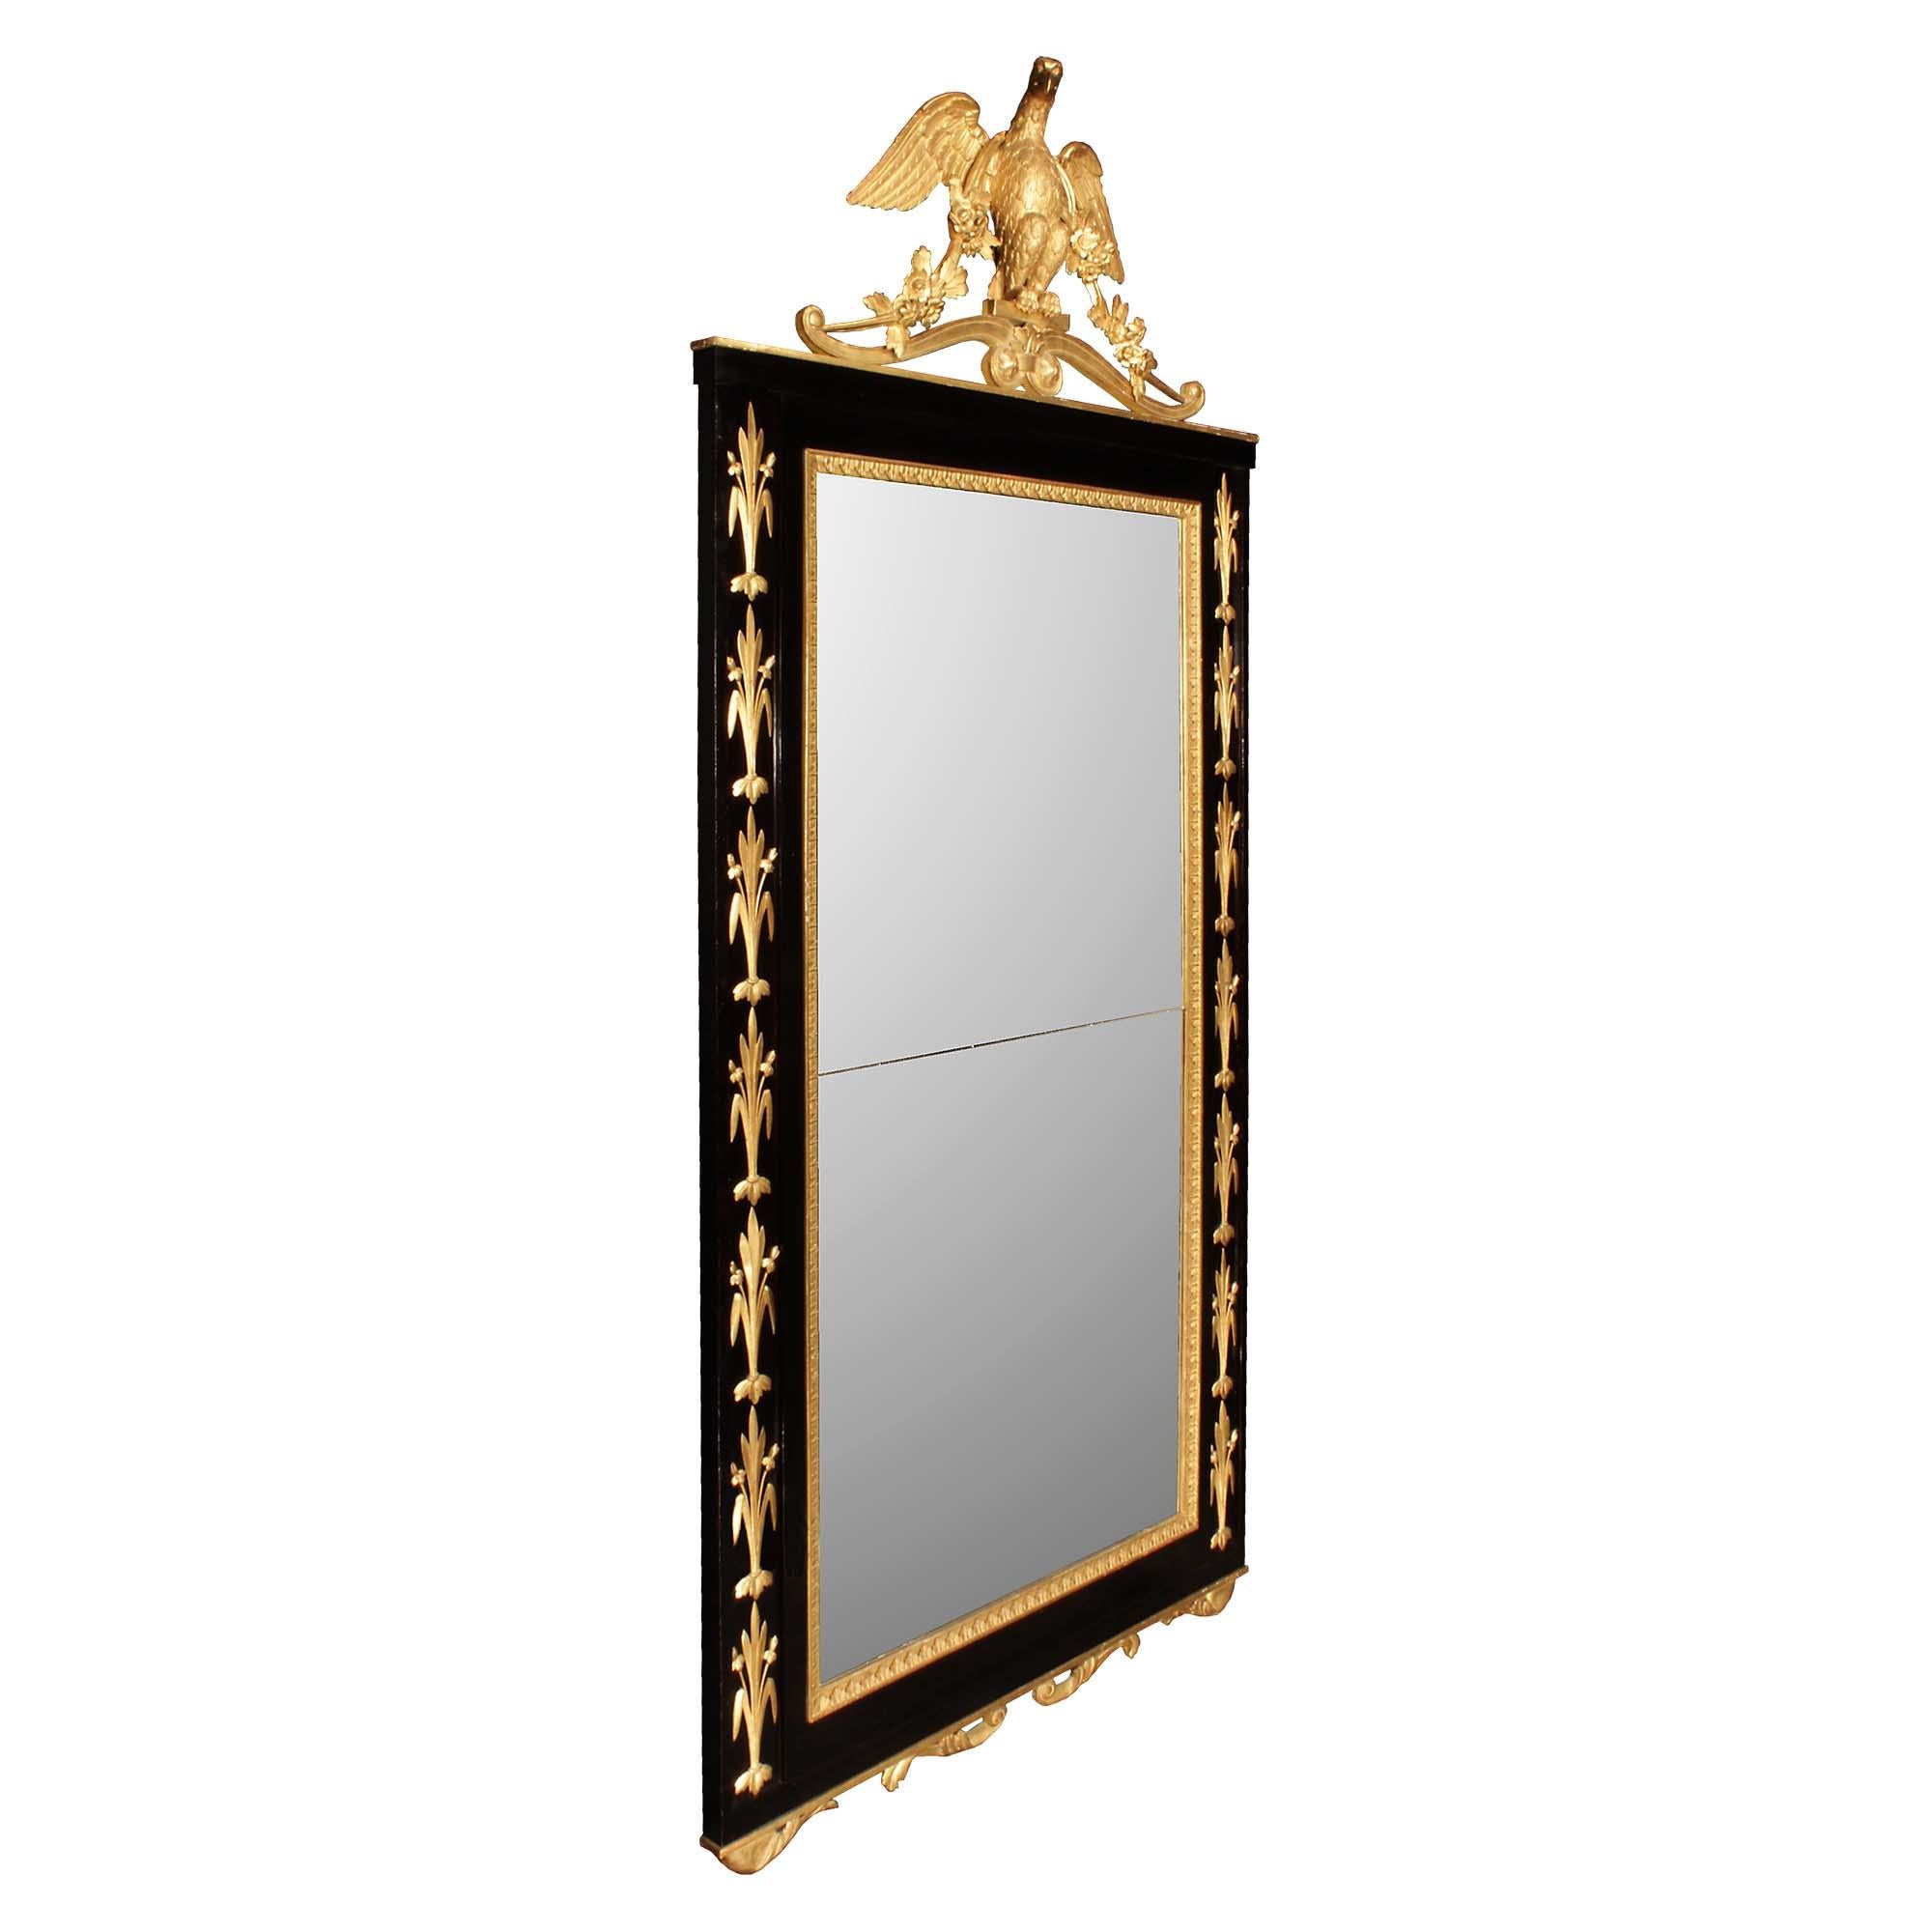 Eine atemberaubende italienische frühen 19. Jahrhundert Neo-Klassik st. Ebenholz und Vergoldung Spiegel. Die originale Spiegelplatte befindet sich in einem Ebenholzrahmen mit einer blumengeschnitzten Goldholzeinfassung und einer vertieften Platte an